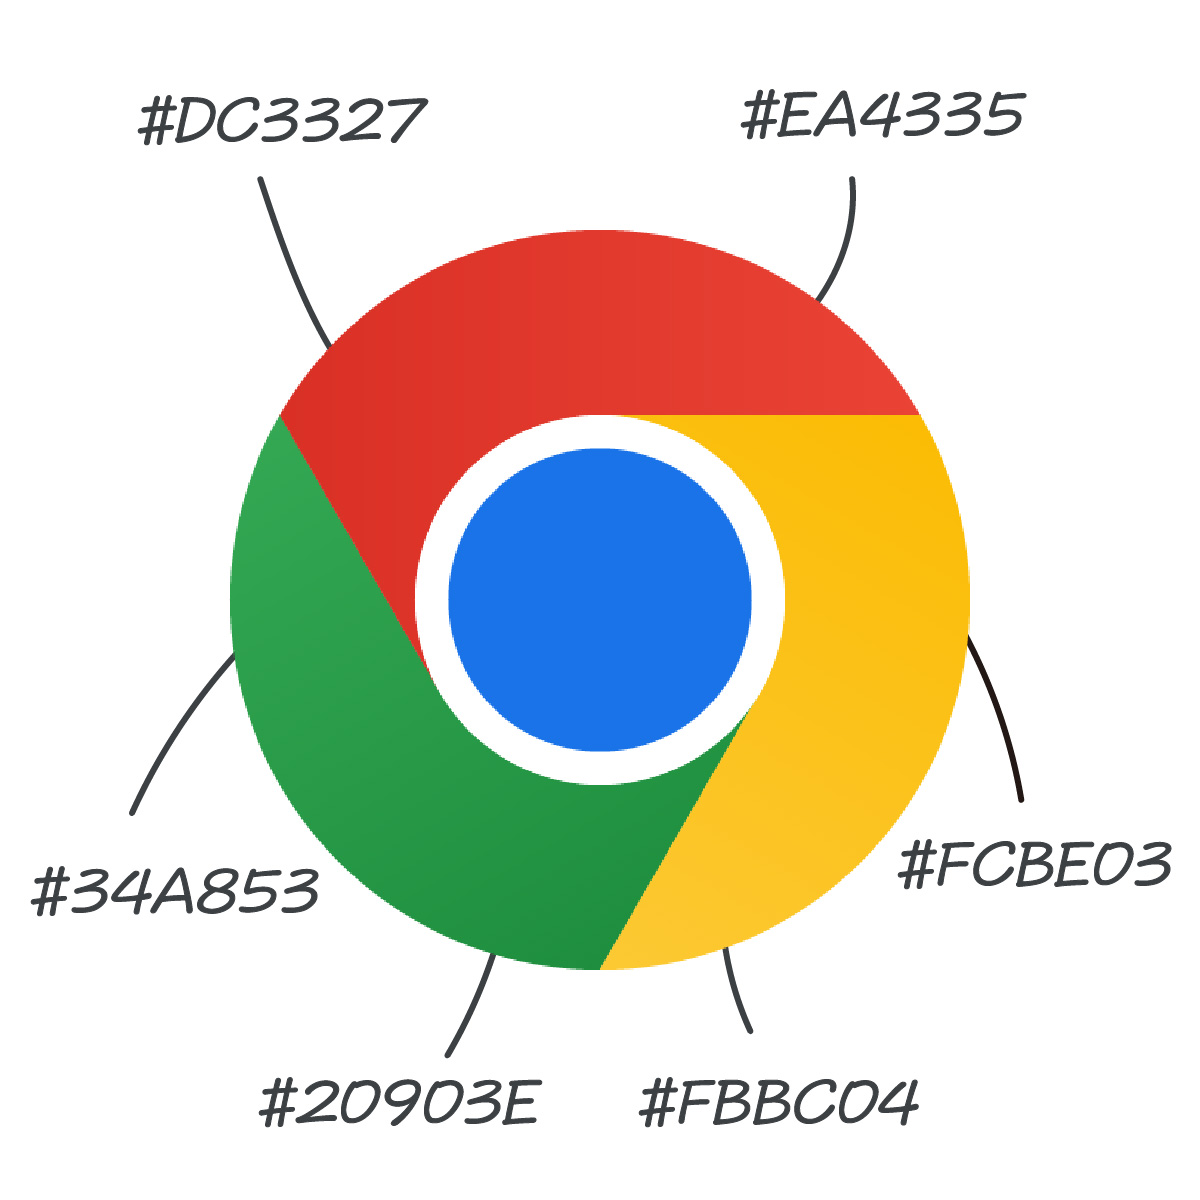 [閒聊] Chrome的logo有微妙的漸層效果